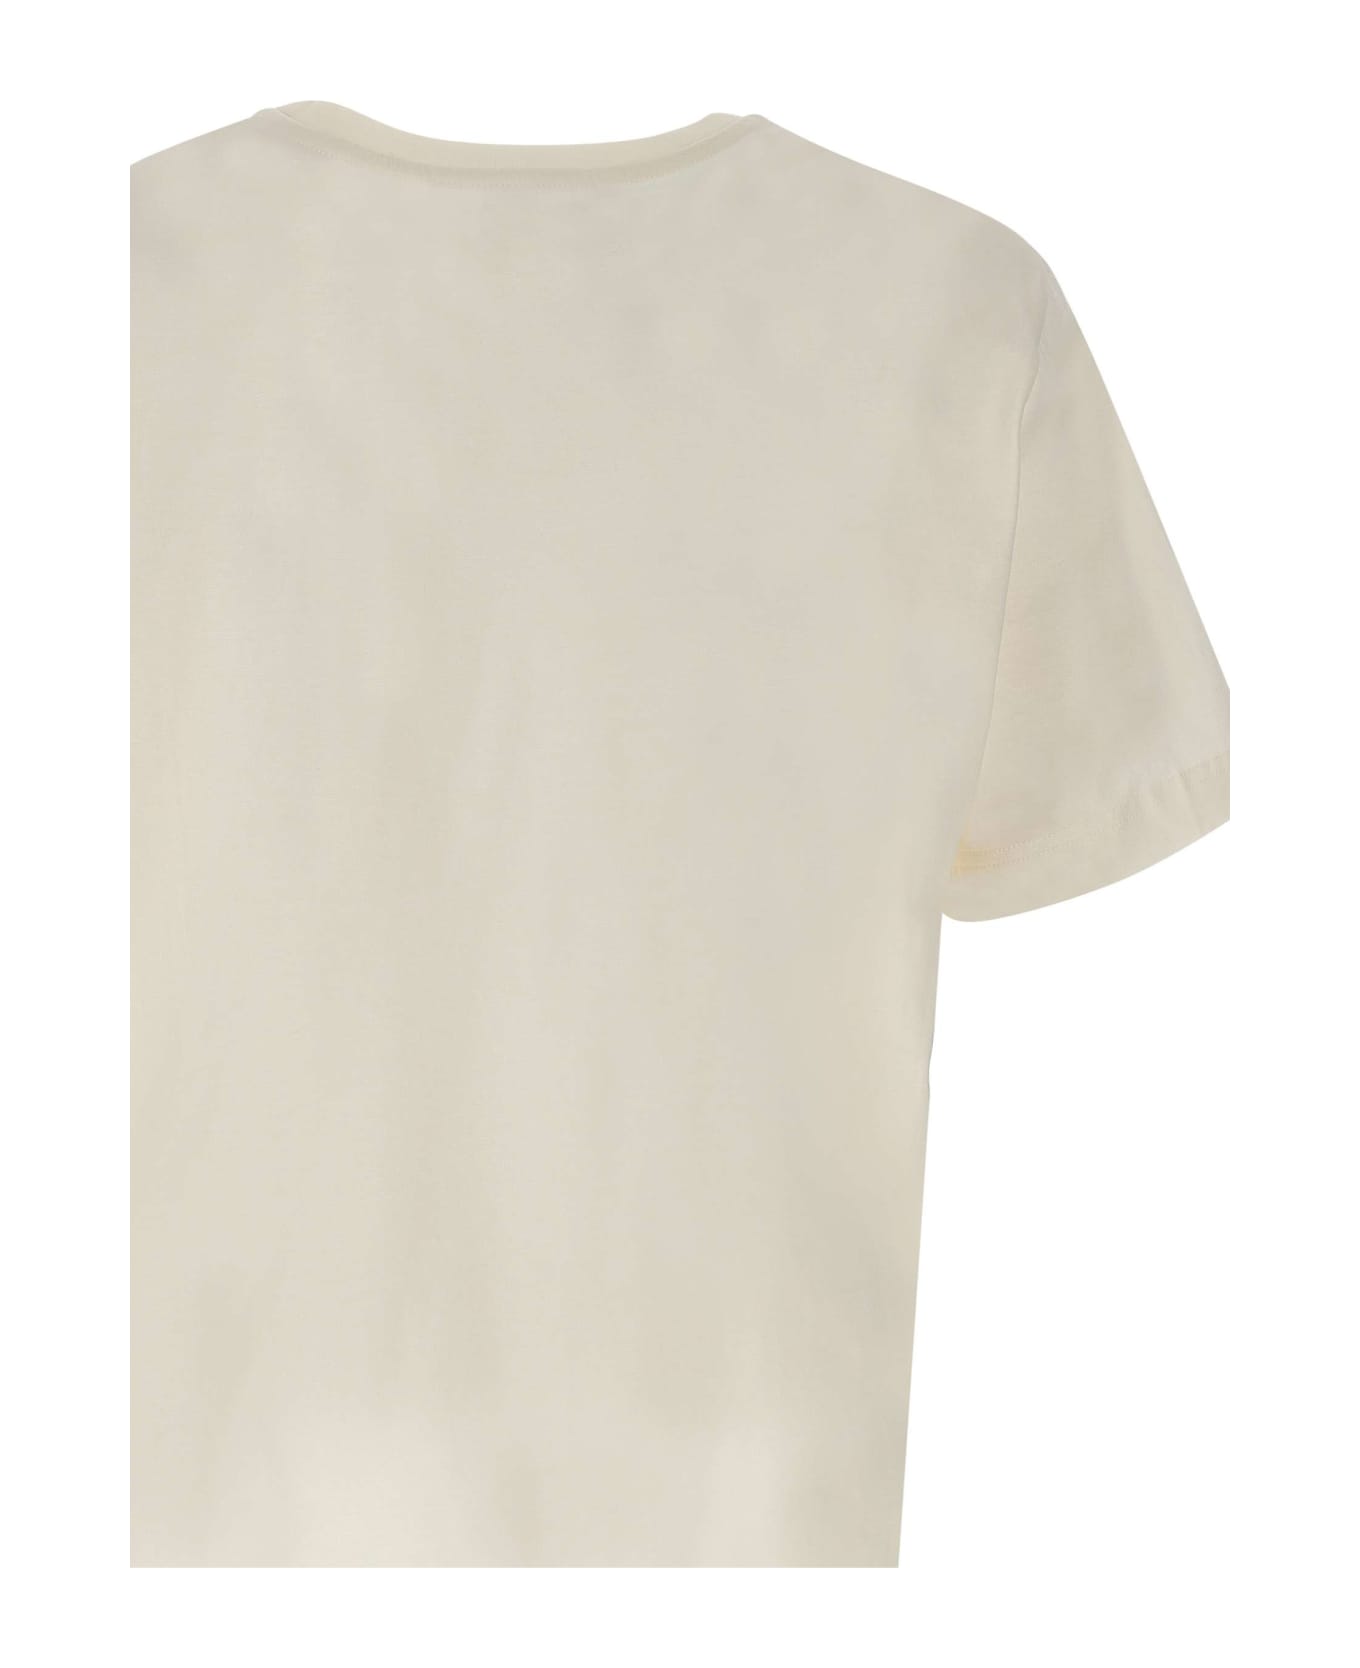 Iceberg Cotton T-shirt - WHITE シャツ